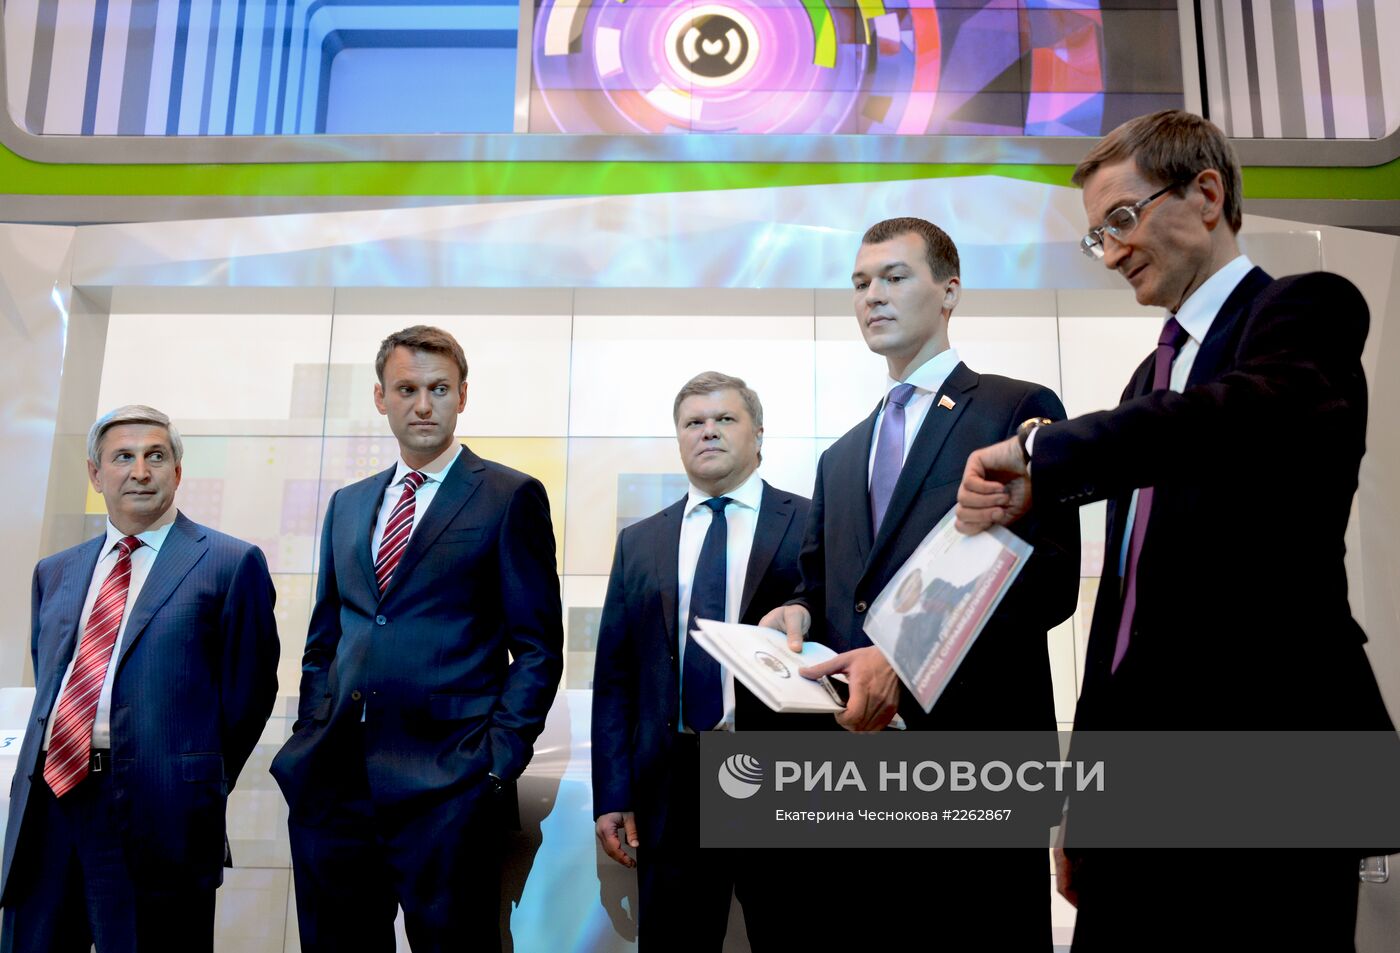 Дебаты между кандидатами в мэры Москвы